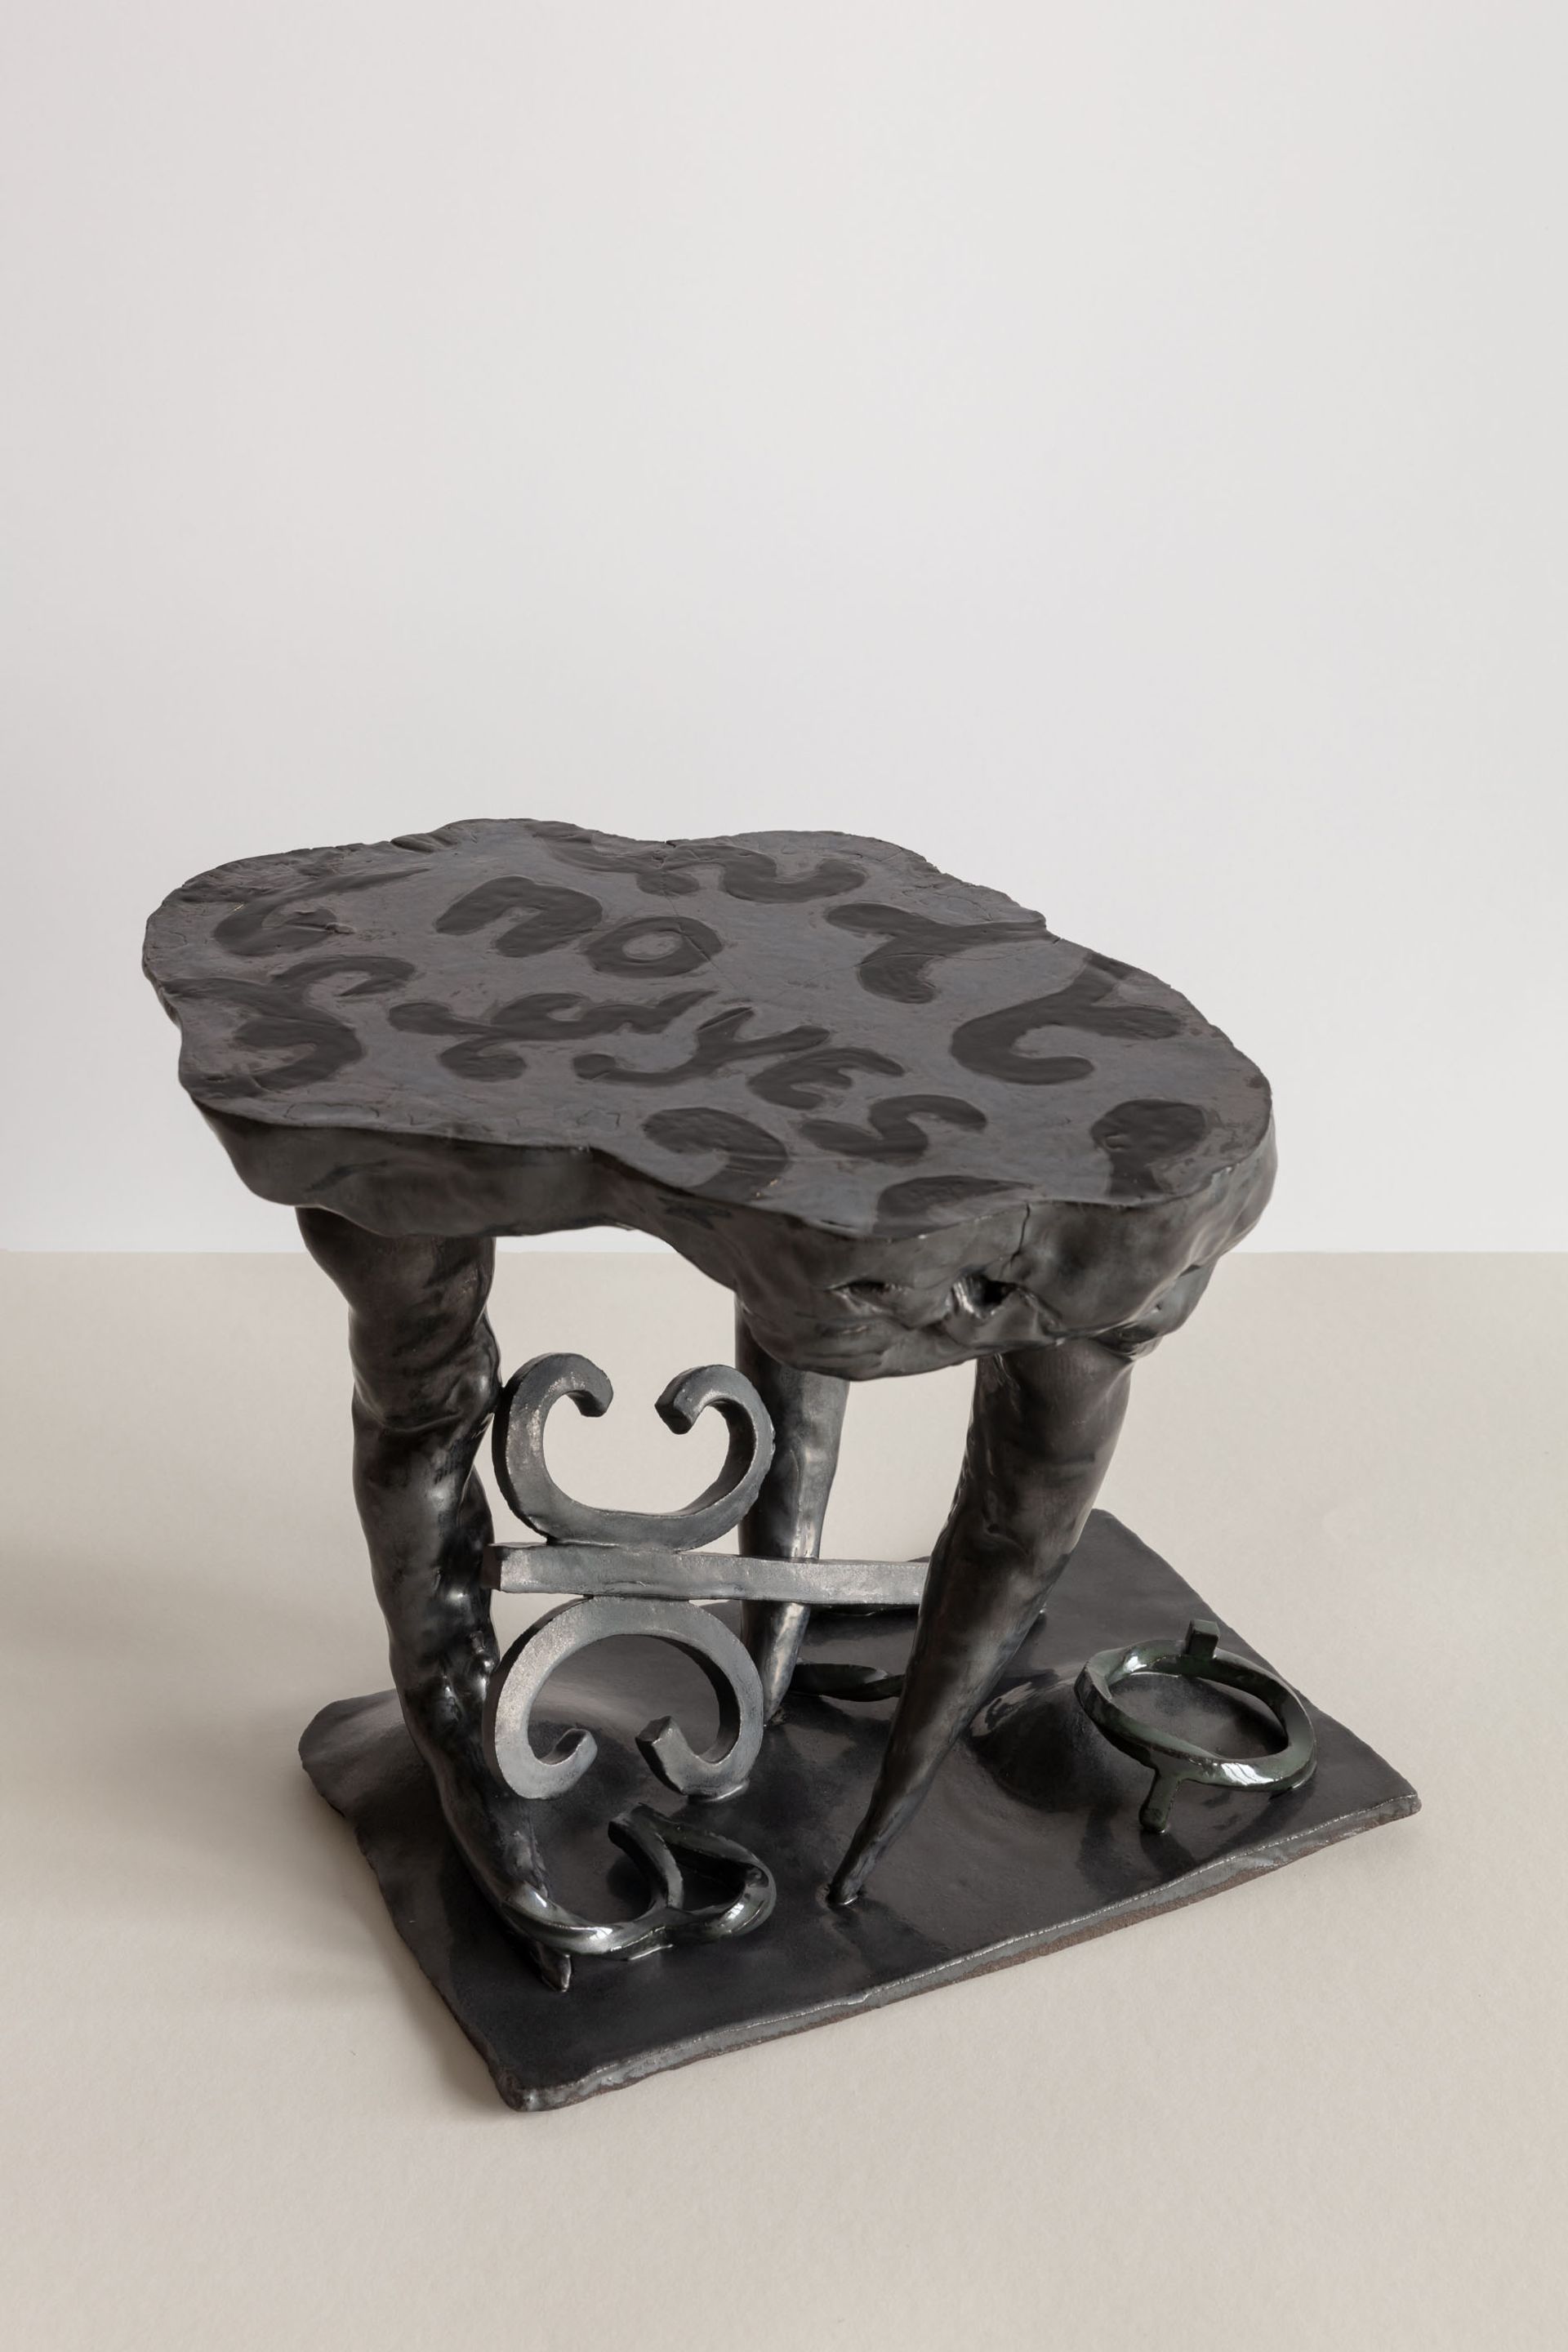 Veronika Hilger, No – Yes, 2022, Ceramic, glazed, 27.5 × 29 × 32 cm